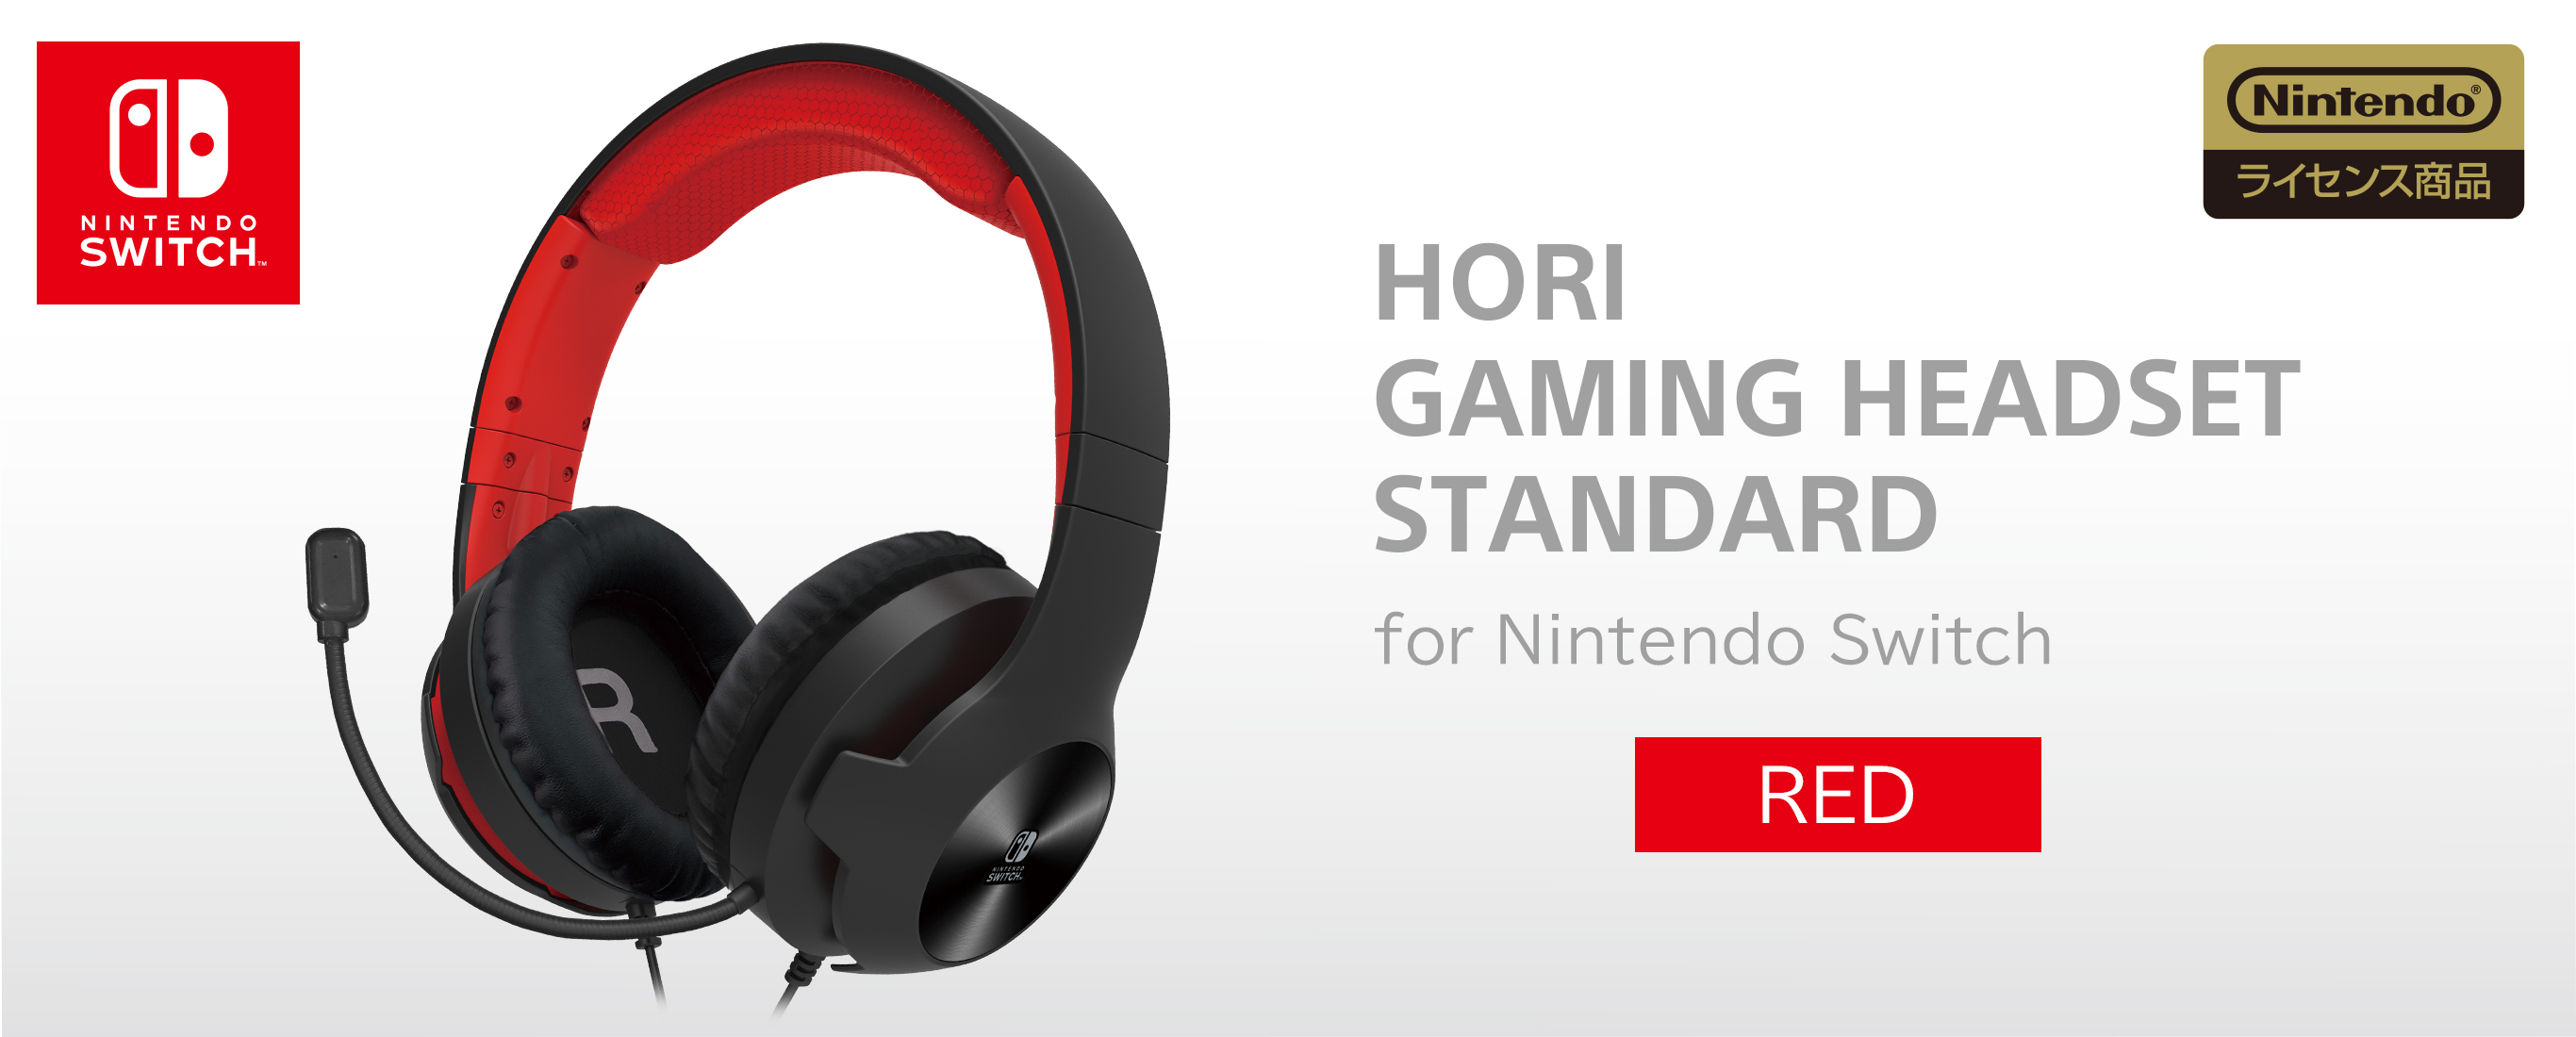 株式会社 Hori ホリゲーミングヘッドセット スタンダード For Nintendo Switch レッド